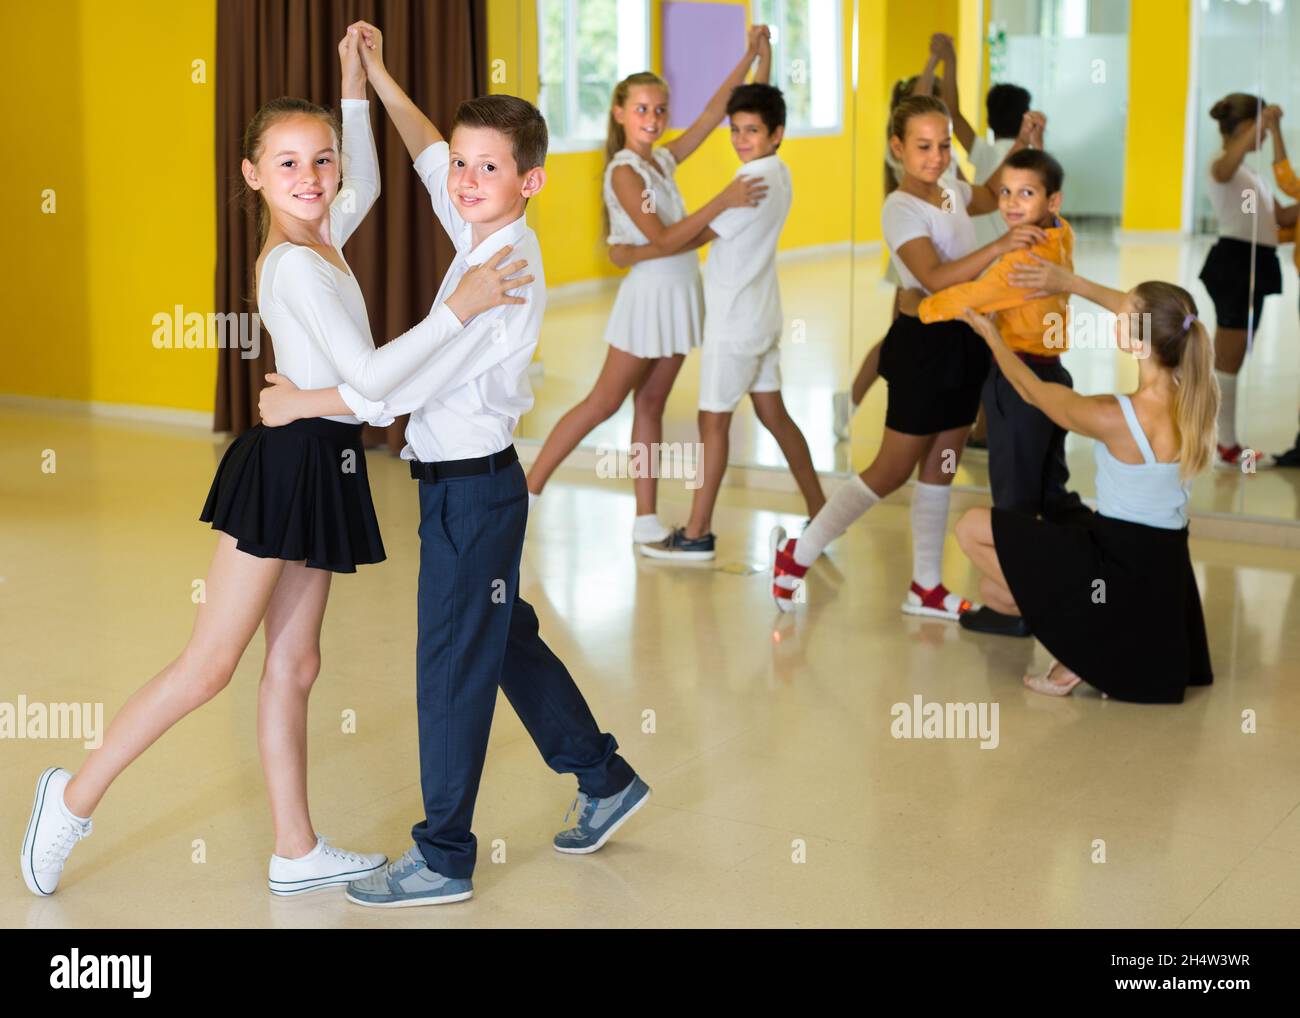 Des paires d'enfants dansent la valse Banque D'Images